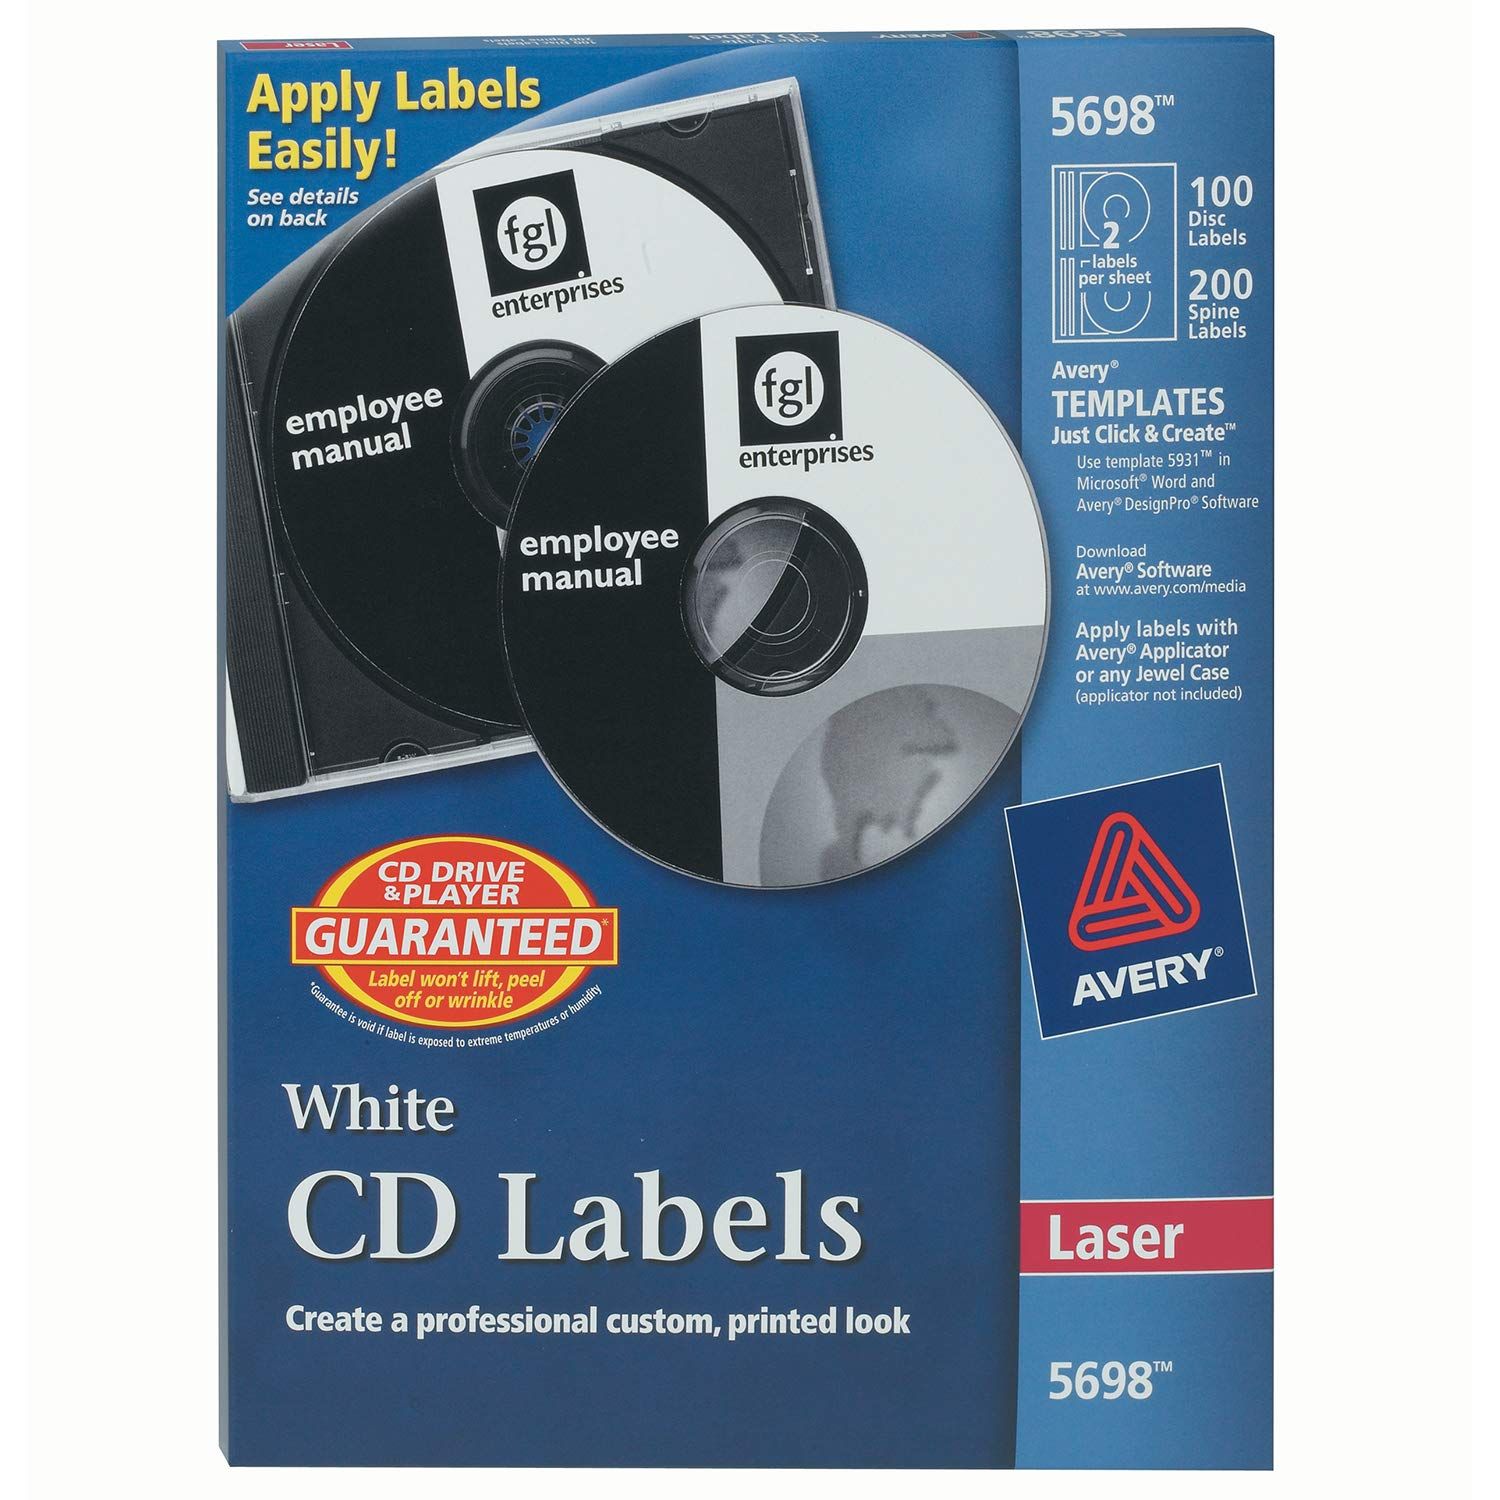 Etiqueta para cd tecnología laser AVERY  Con 100 etiquetas y 200 etiquetas para lomos                                                                                                                                                                                                                    color blanco                             - 05698